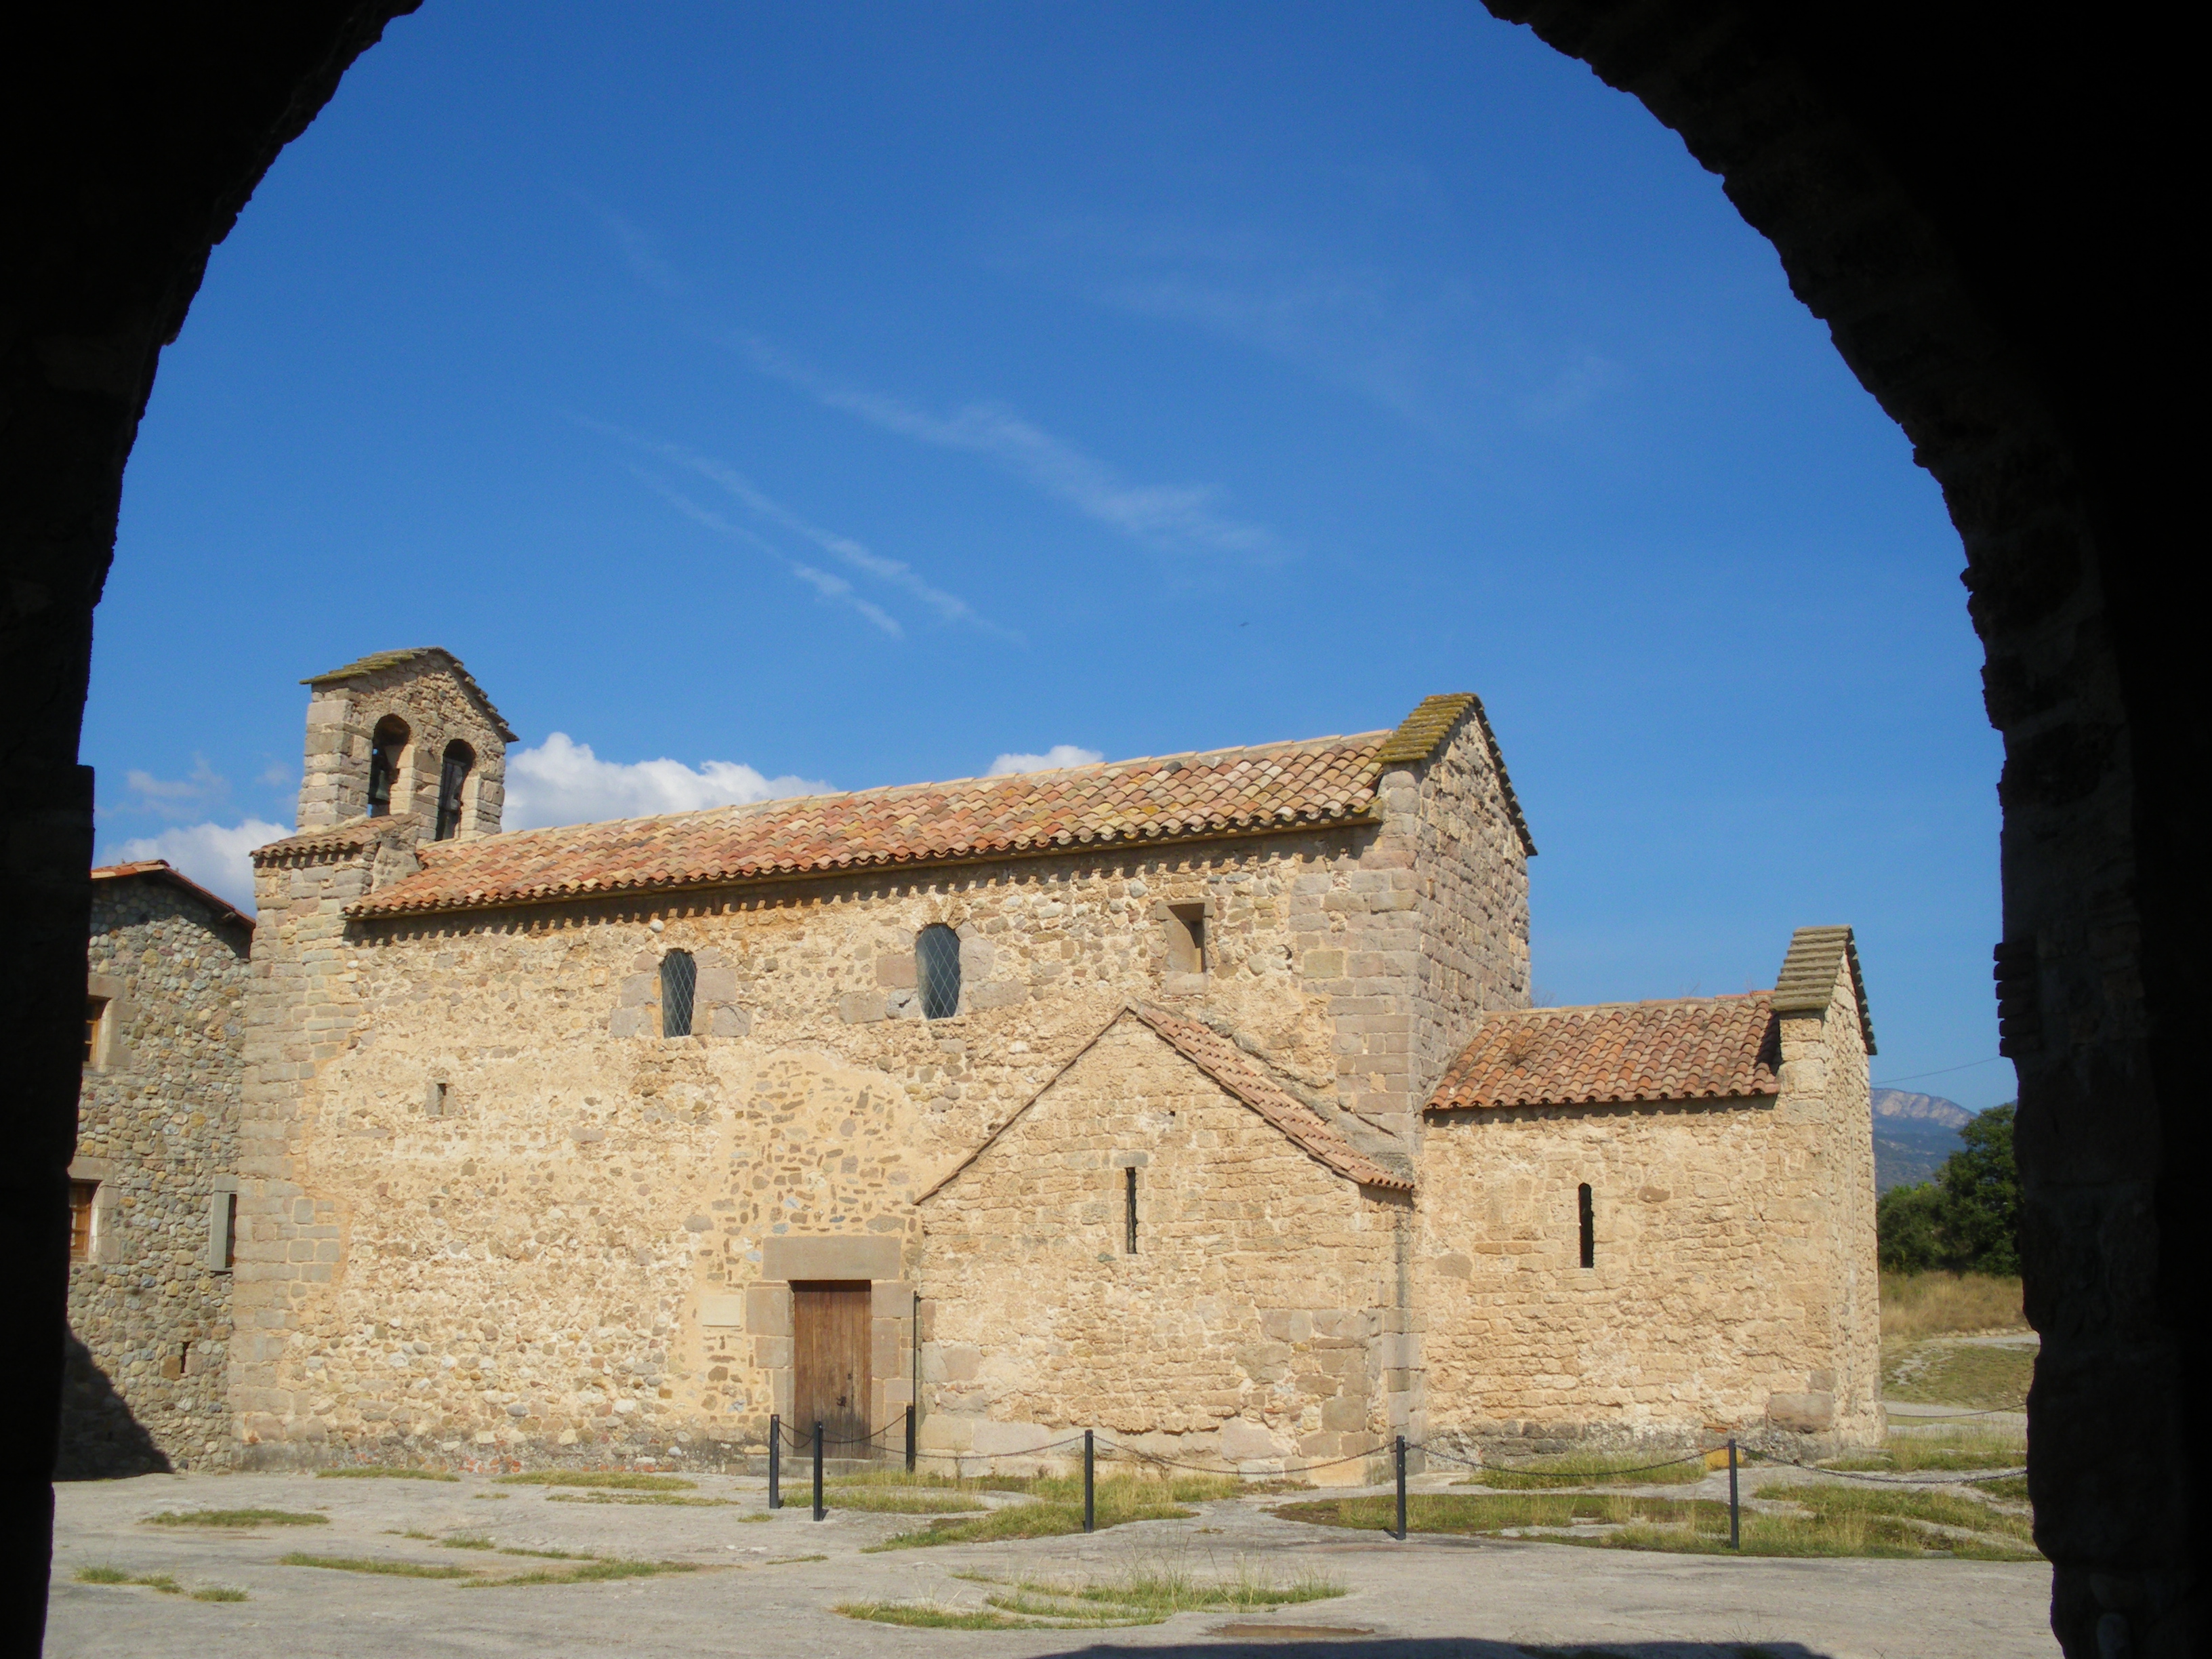 Ruta del romànic al Berguedà